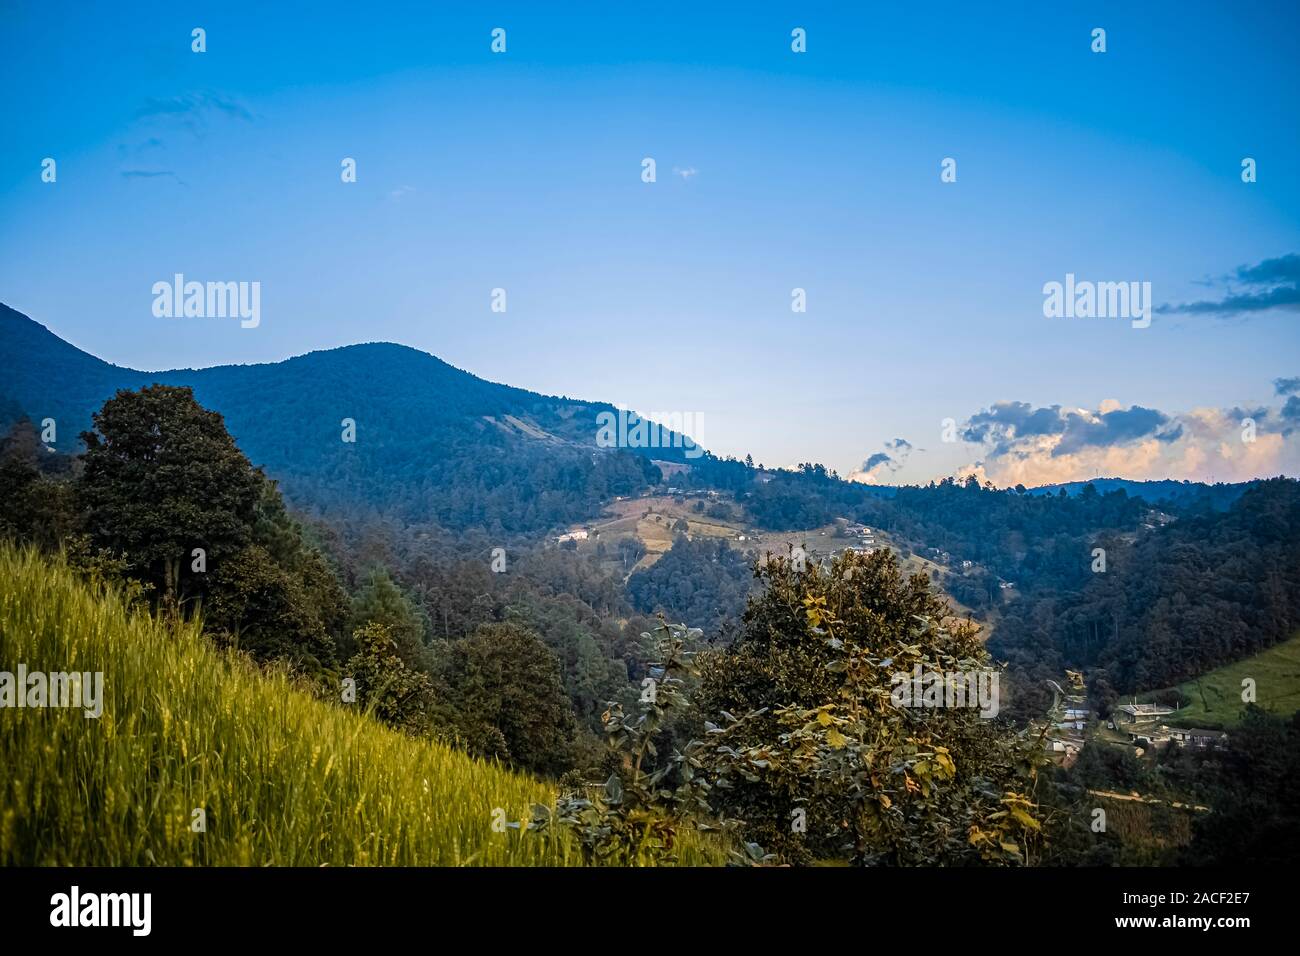 paisaje hermoso de atardecer con bosques y siembras de trigo y montañas de cajola Quetzaltenango, casas de personas en el valle Stock Photo